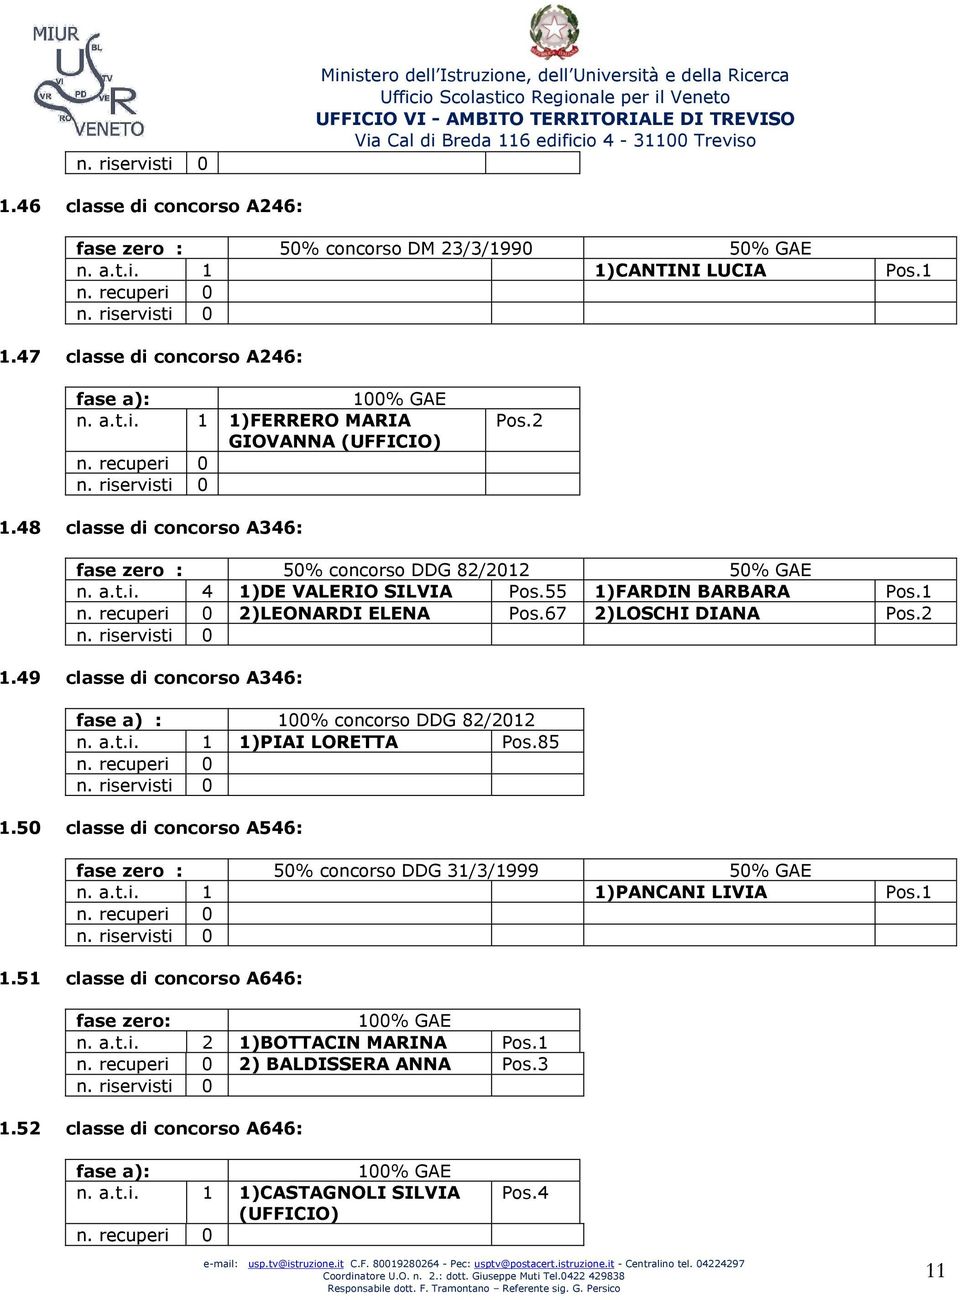 67 2)LOSCHI DIANA Pos.2 1.49 classe di concorso A346: fase a) : 100% concorso DDG 82/2012 n. a.t.i. 1 1)PIAI LORETTA Pos.85 1.